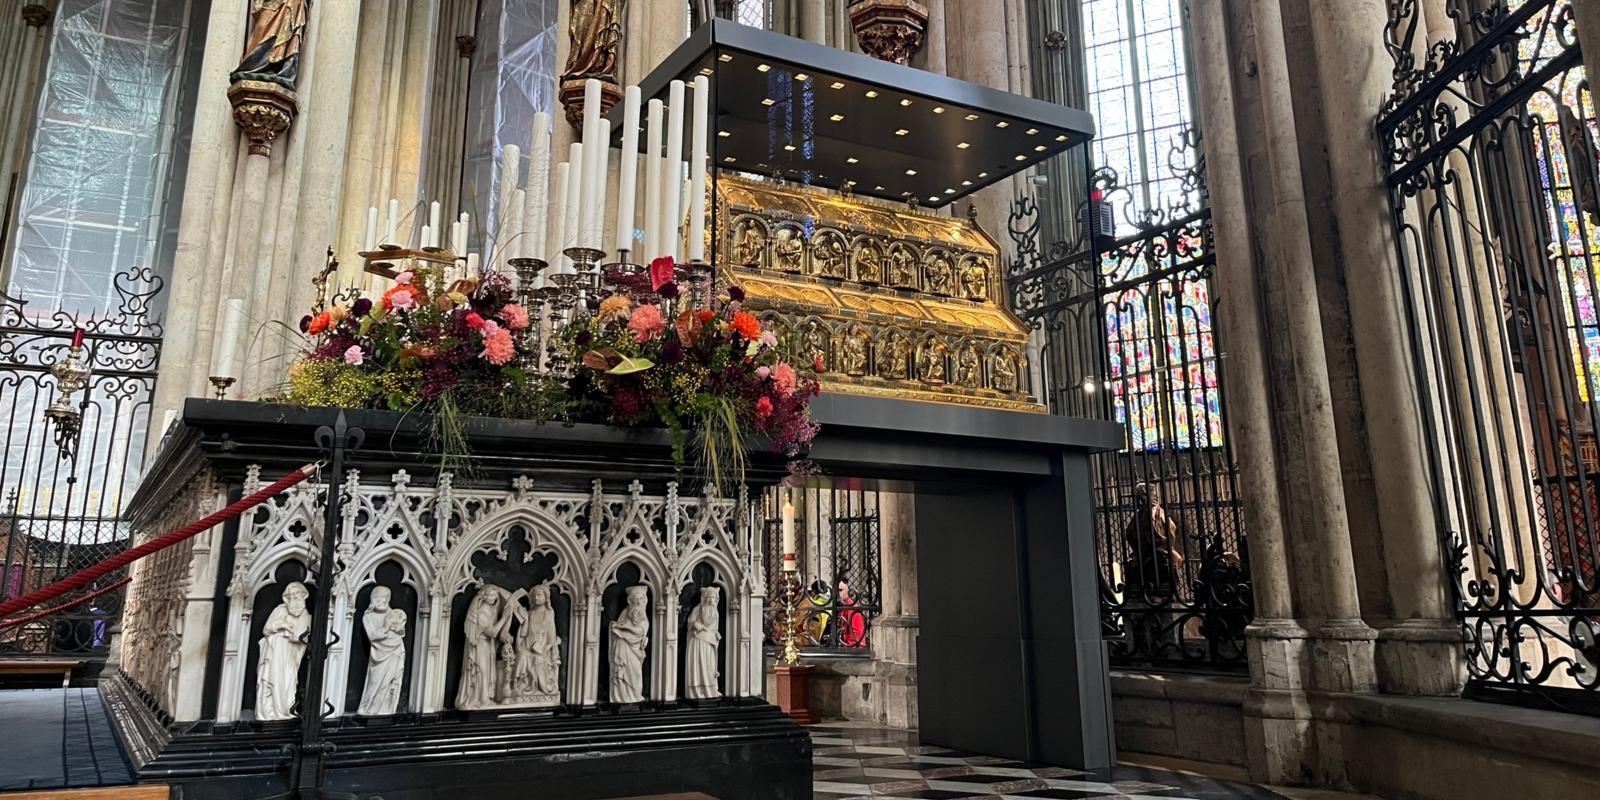 Zur Dreikönigswallfahrt 2022 ist der Hochaltar vor dem Dreikönigsschrein festlich mit Blumen und Kerzen geschmückt.